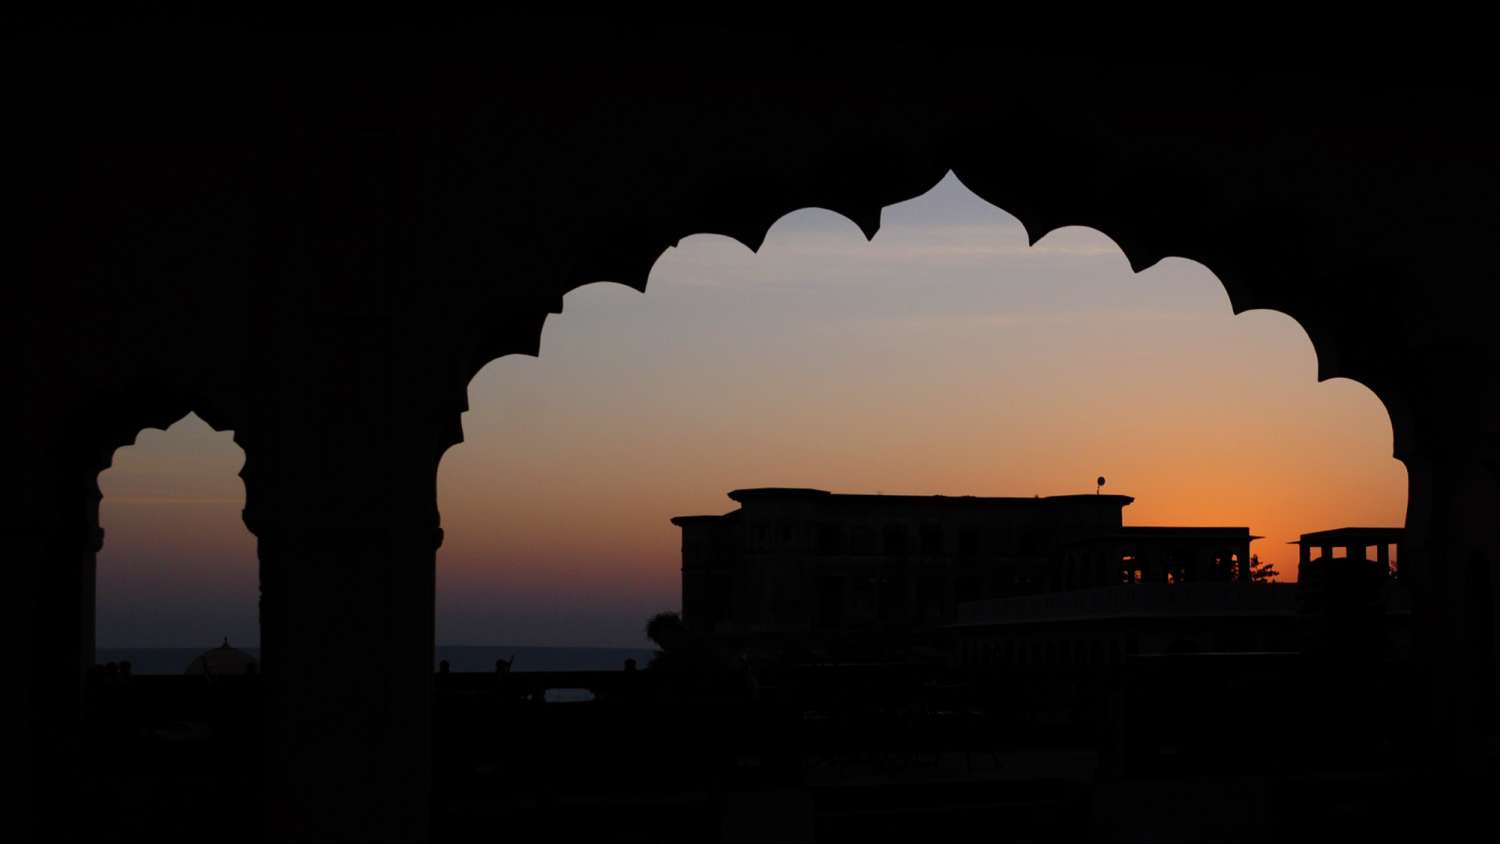 gwalior fort galerie de fonds d'écran,ciel,lumière,nuage,architecture,silhouette